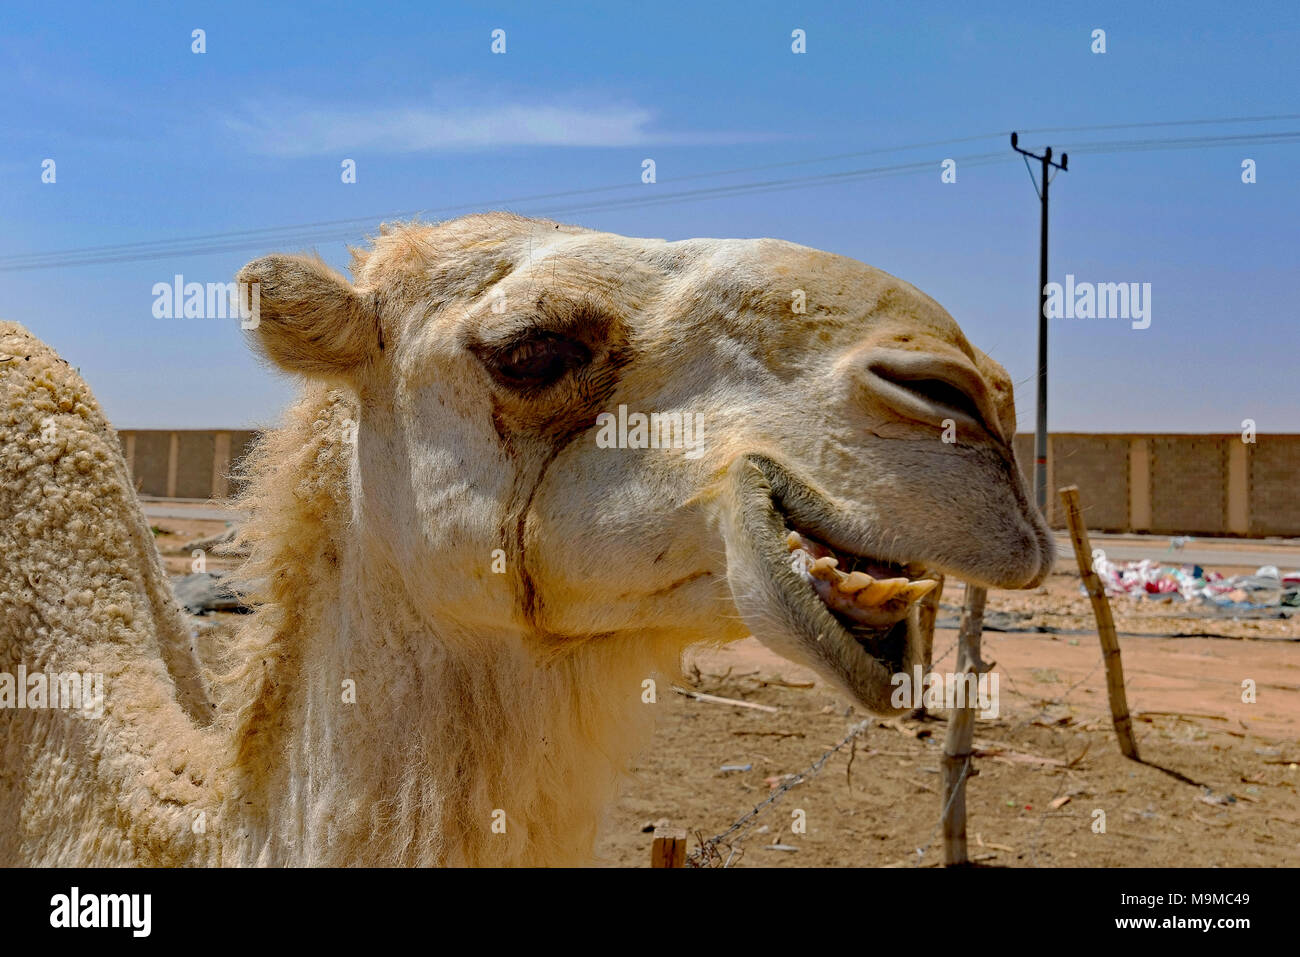 Close-ups de camellos para la venta cerca de Riad, Arabia Saudí. Foto de stock